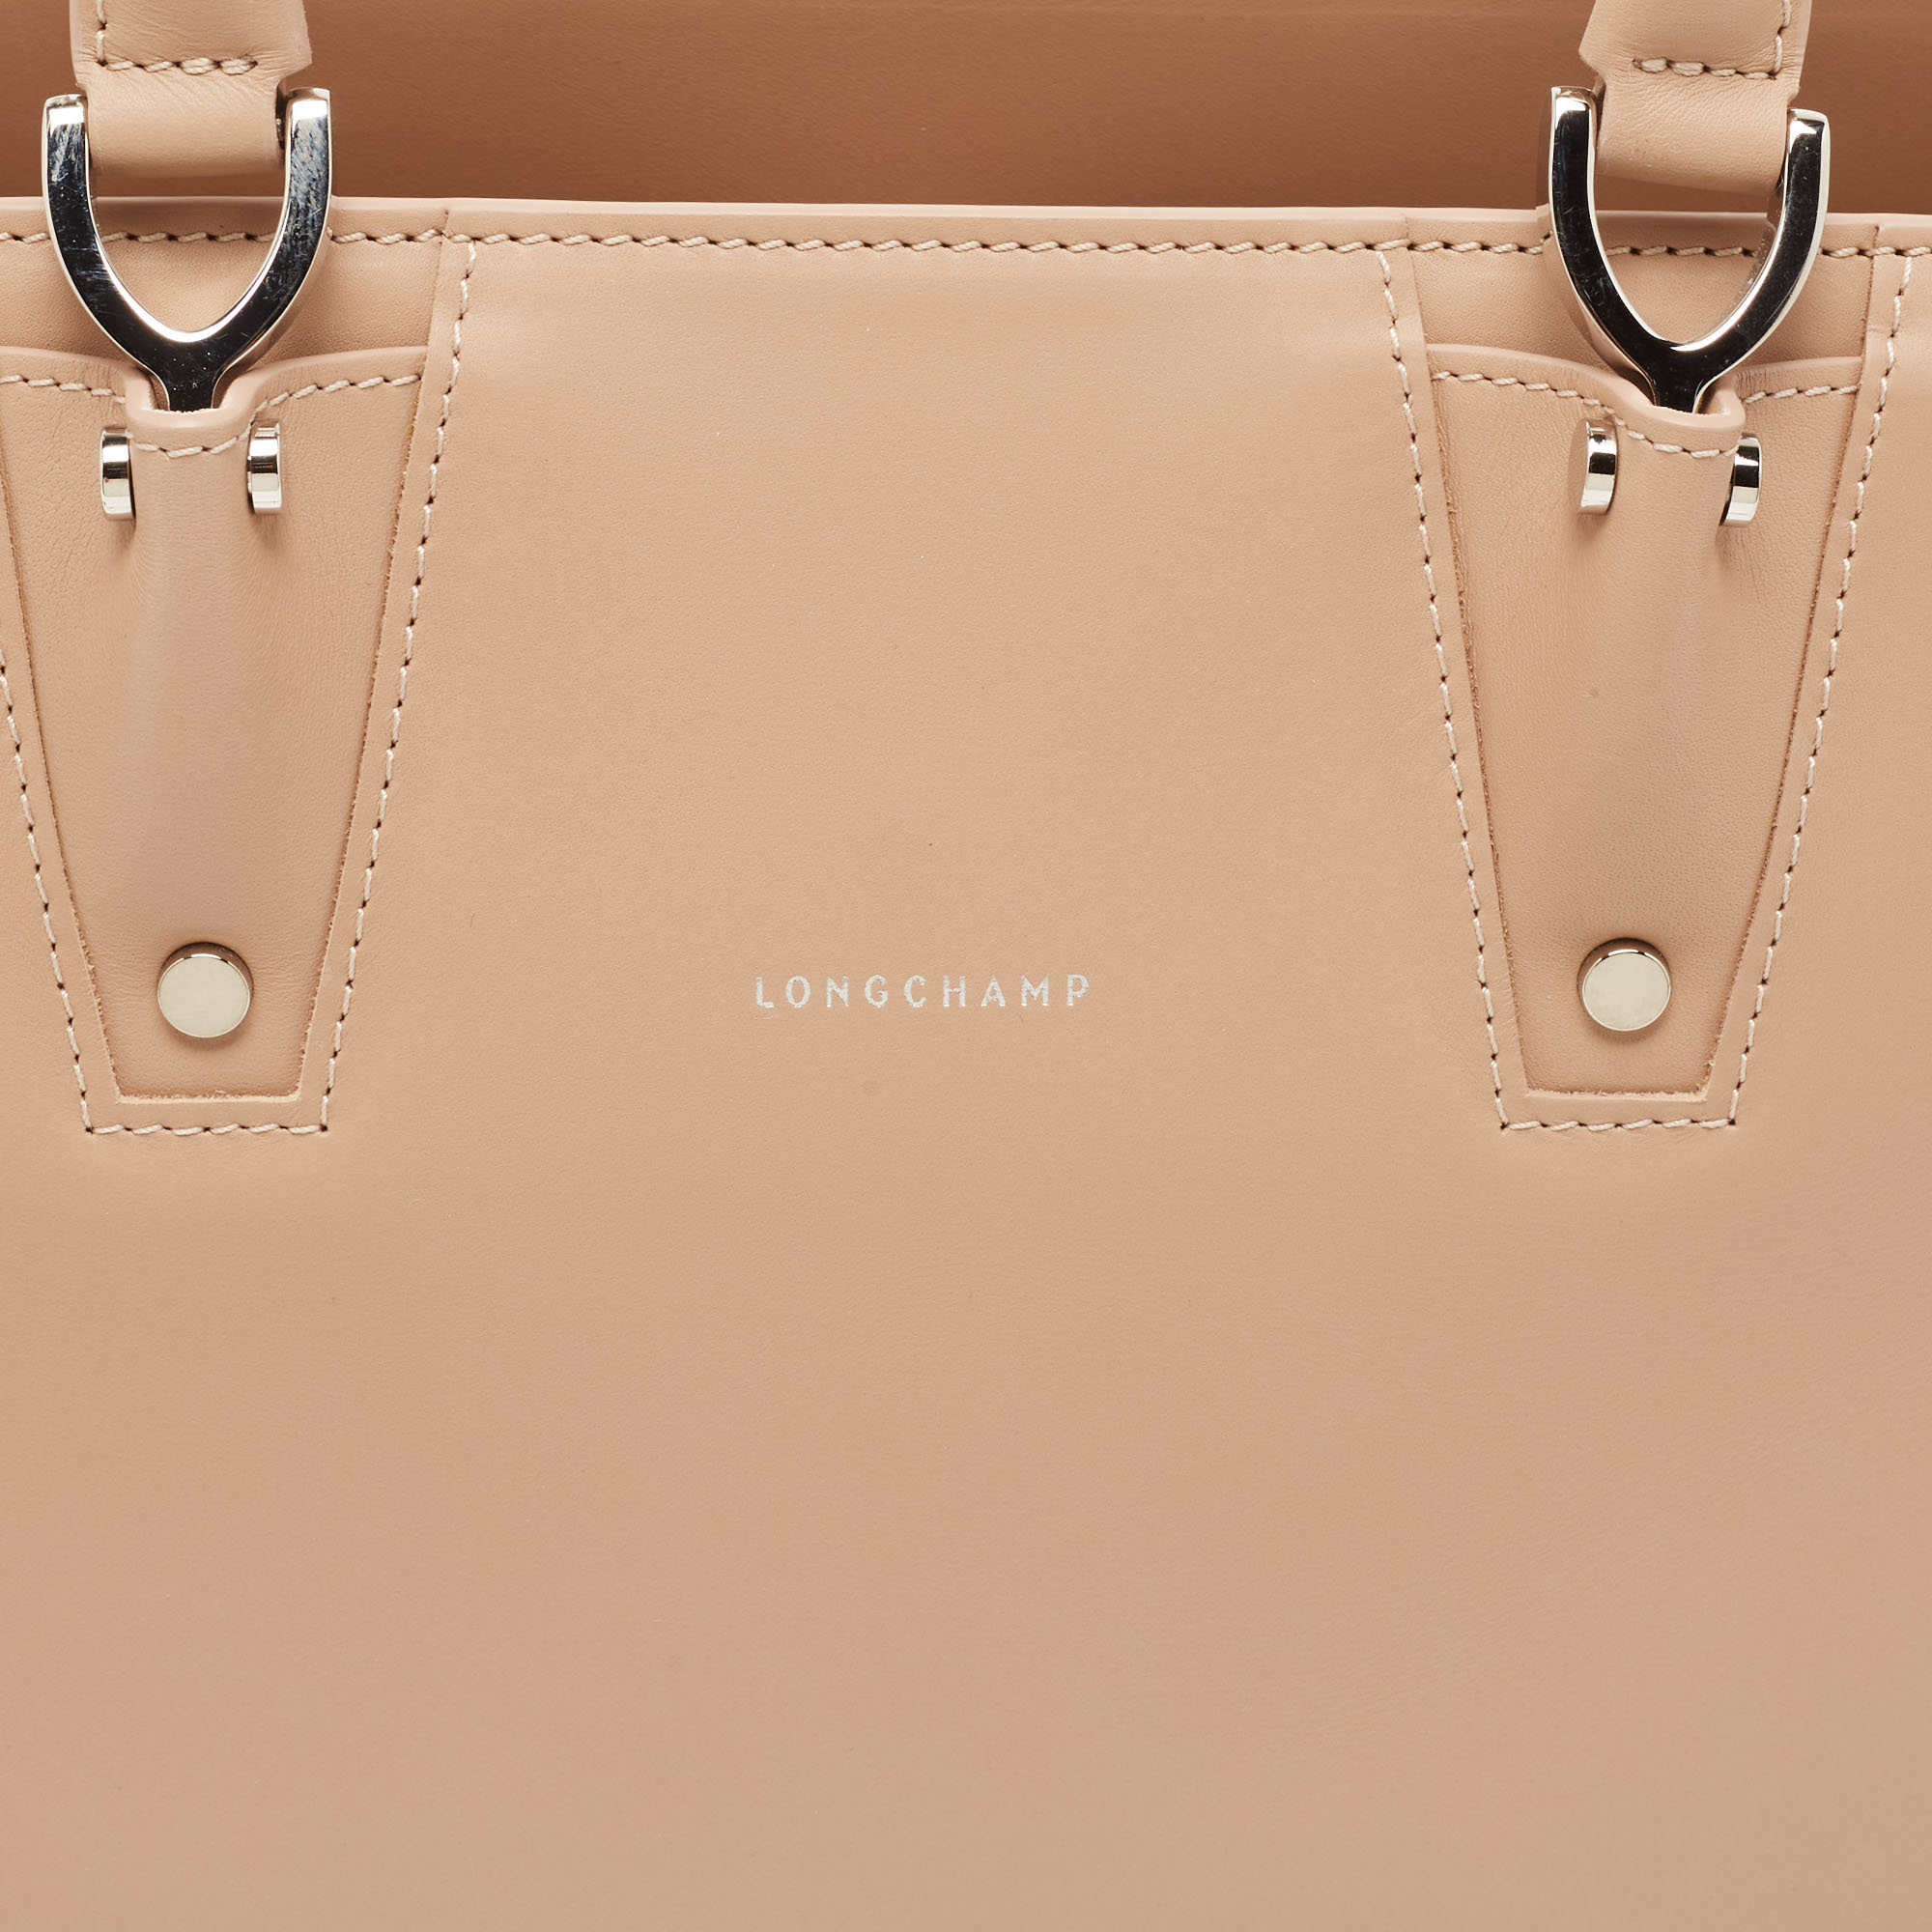 Longchamp Light Pink Leather Paris Premiere Tote